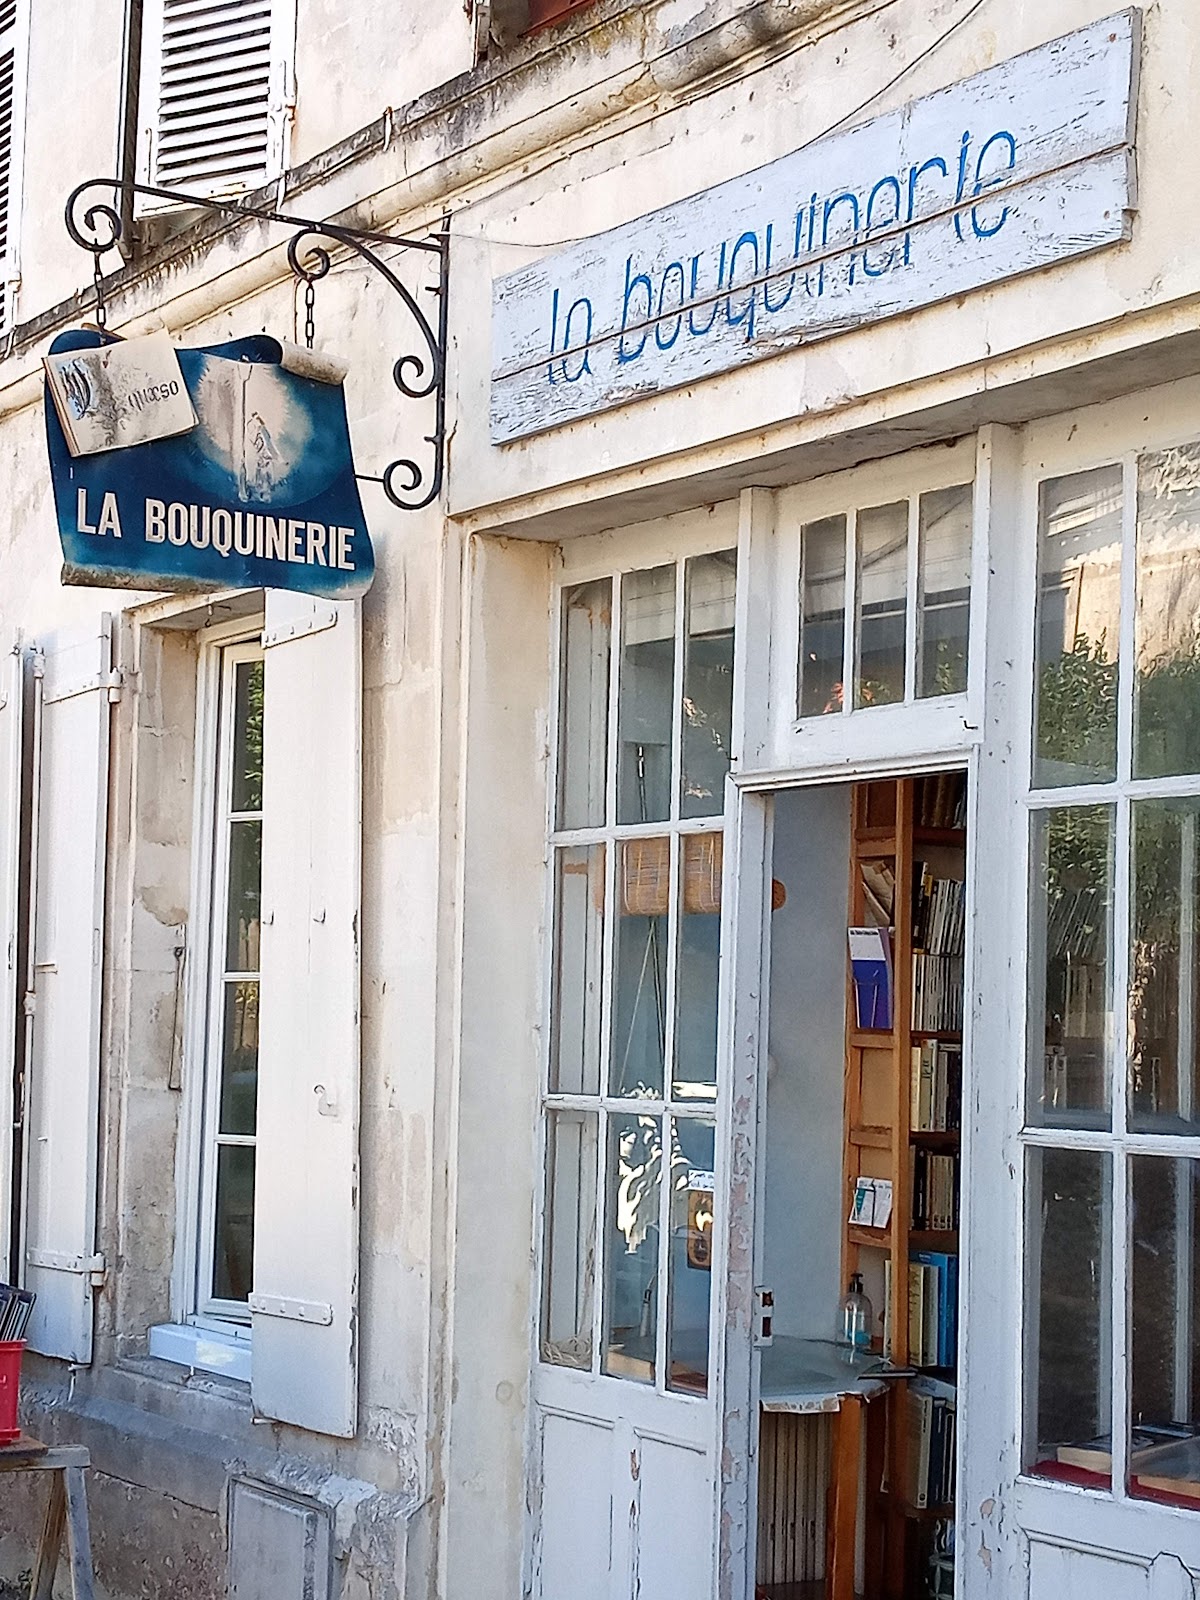 La Bouquinerie - Jean-Pierre CANO